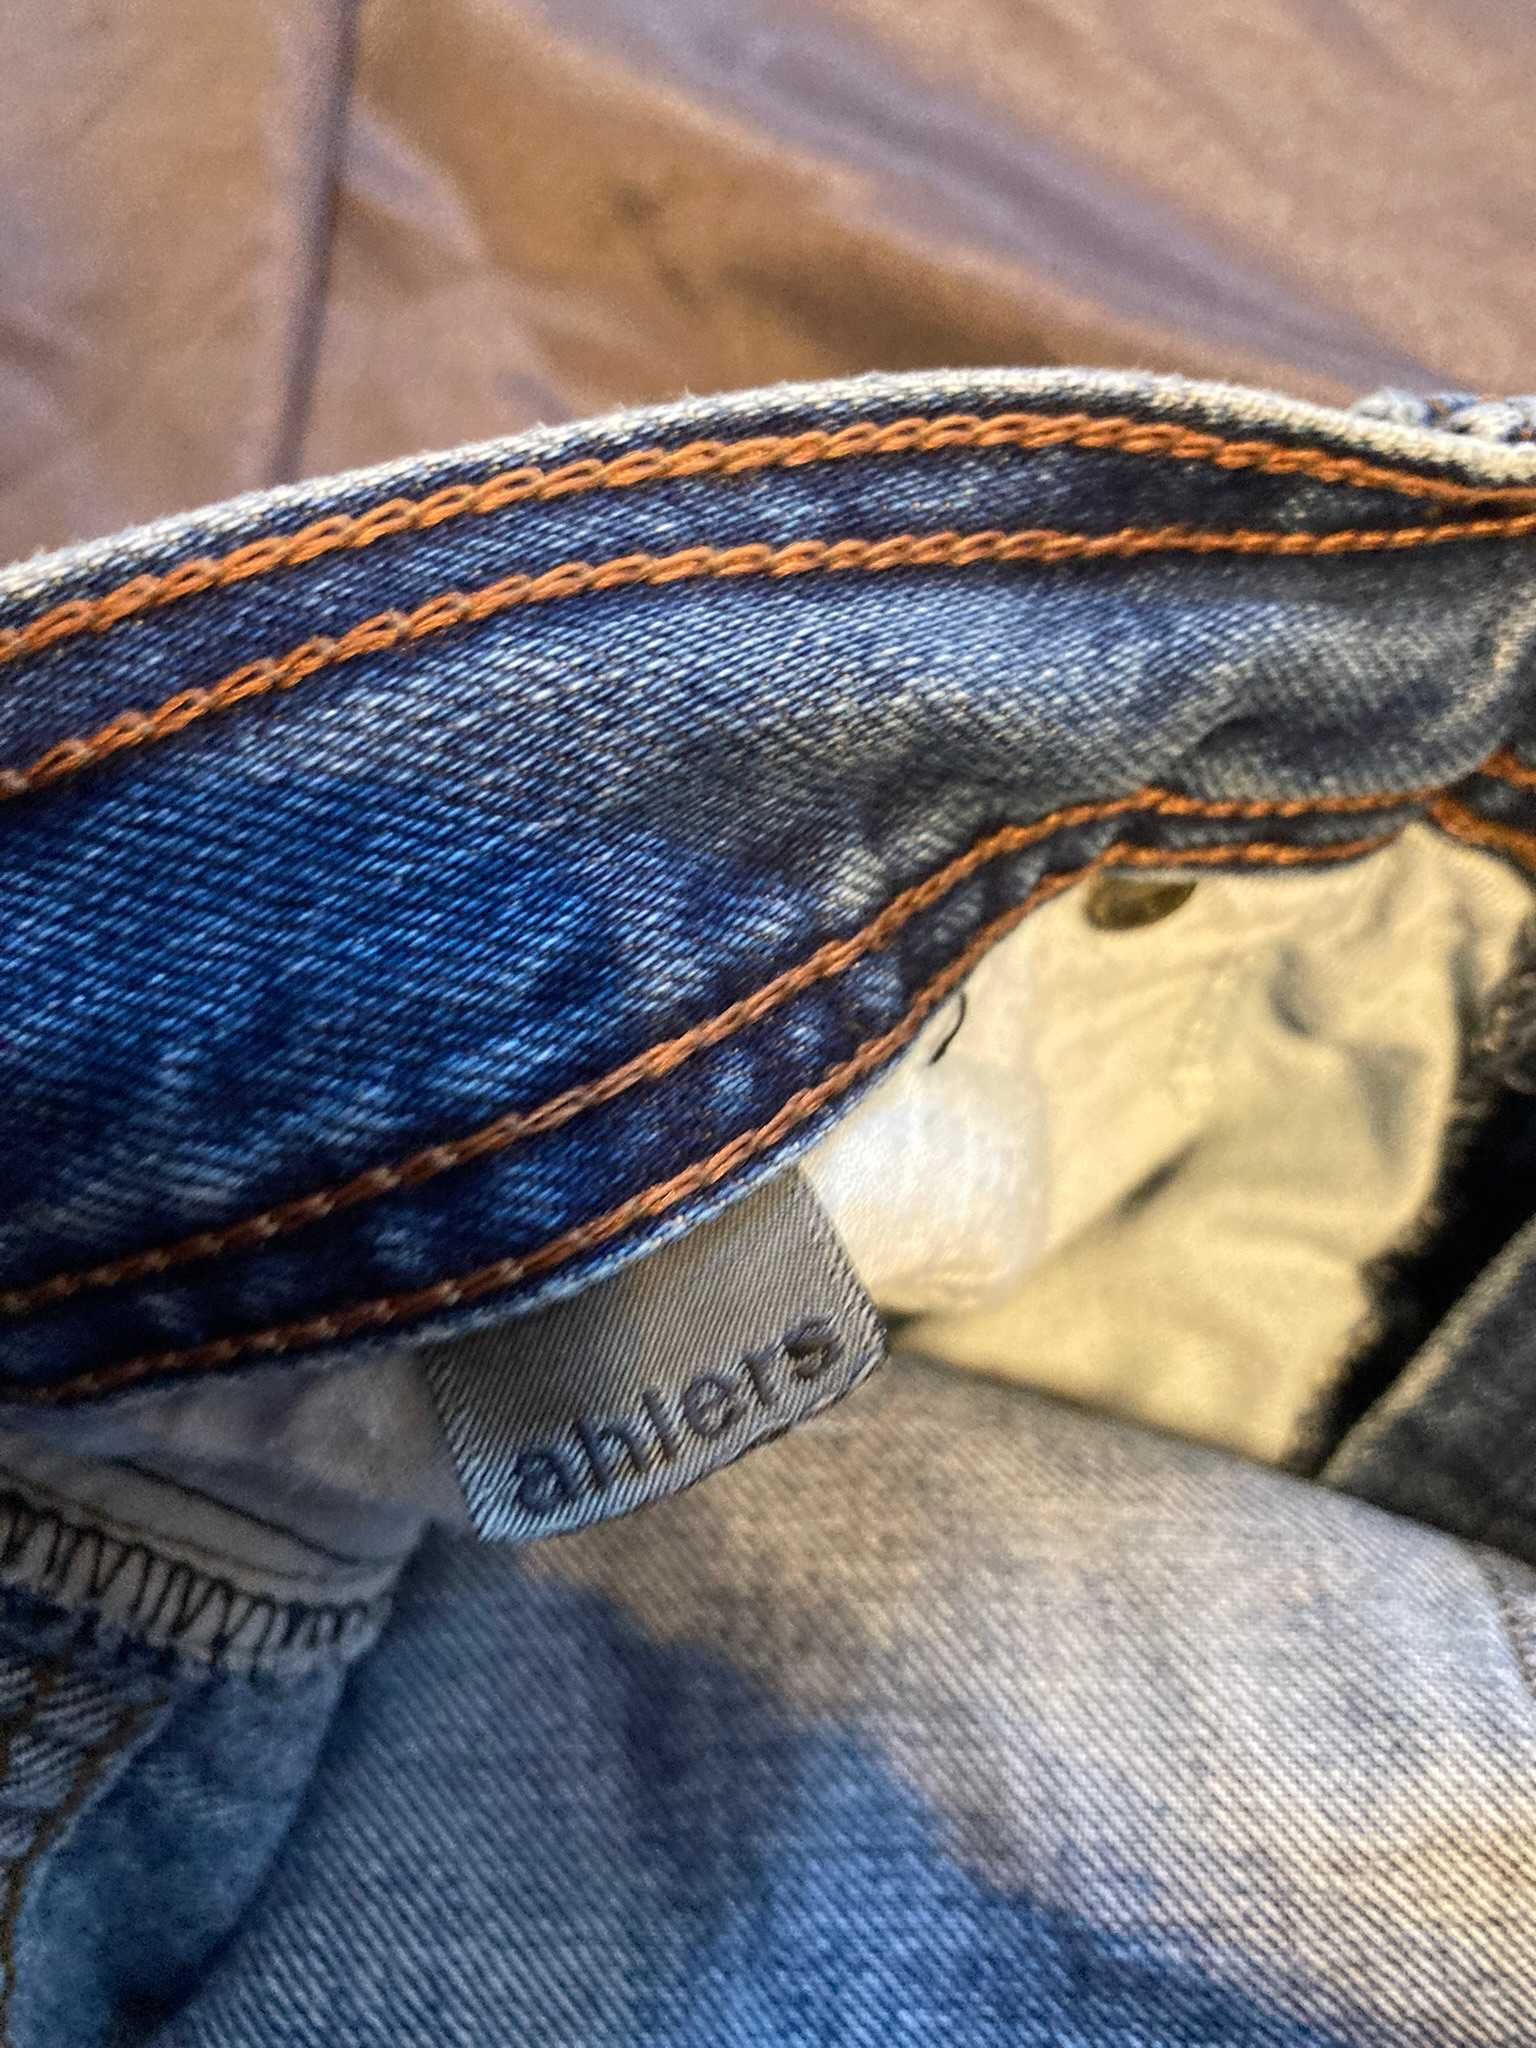 Spodnie jeansy Pierre Cardin jeans denim dżinsy